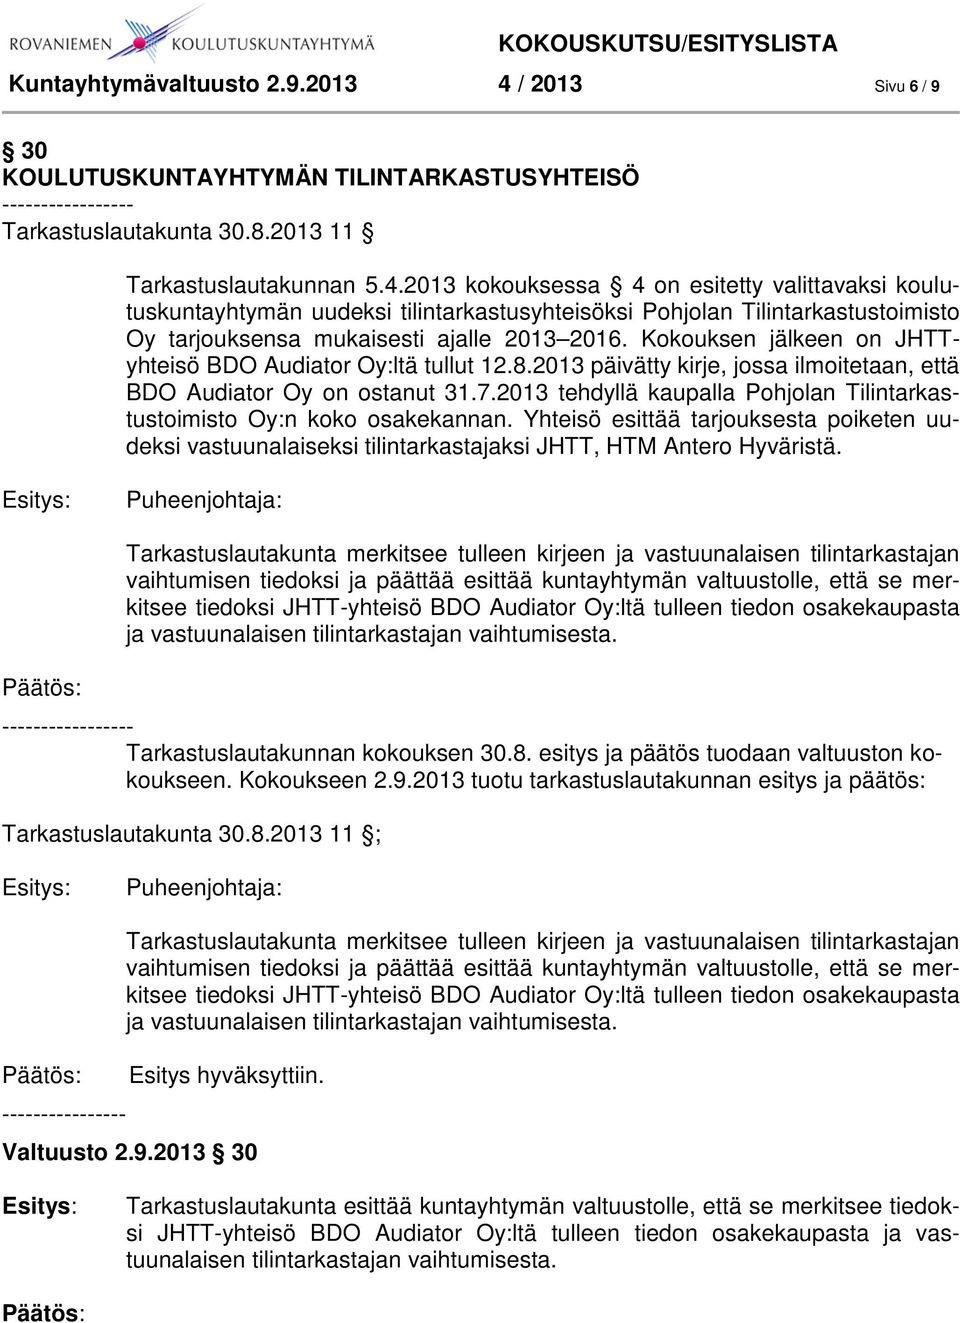 2013 kokouksessa 4 on esitetty valittavaksi koulutuskuntayhtymän uudeksi tilintarkastusyhteisöksi Pohjolan Tilintarkastustoimisto Oy tarjouksensa mukaisesti ajalle 2013 2016.